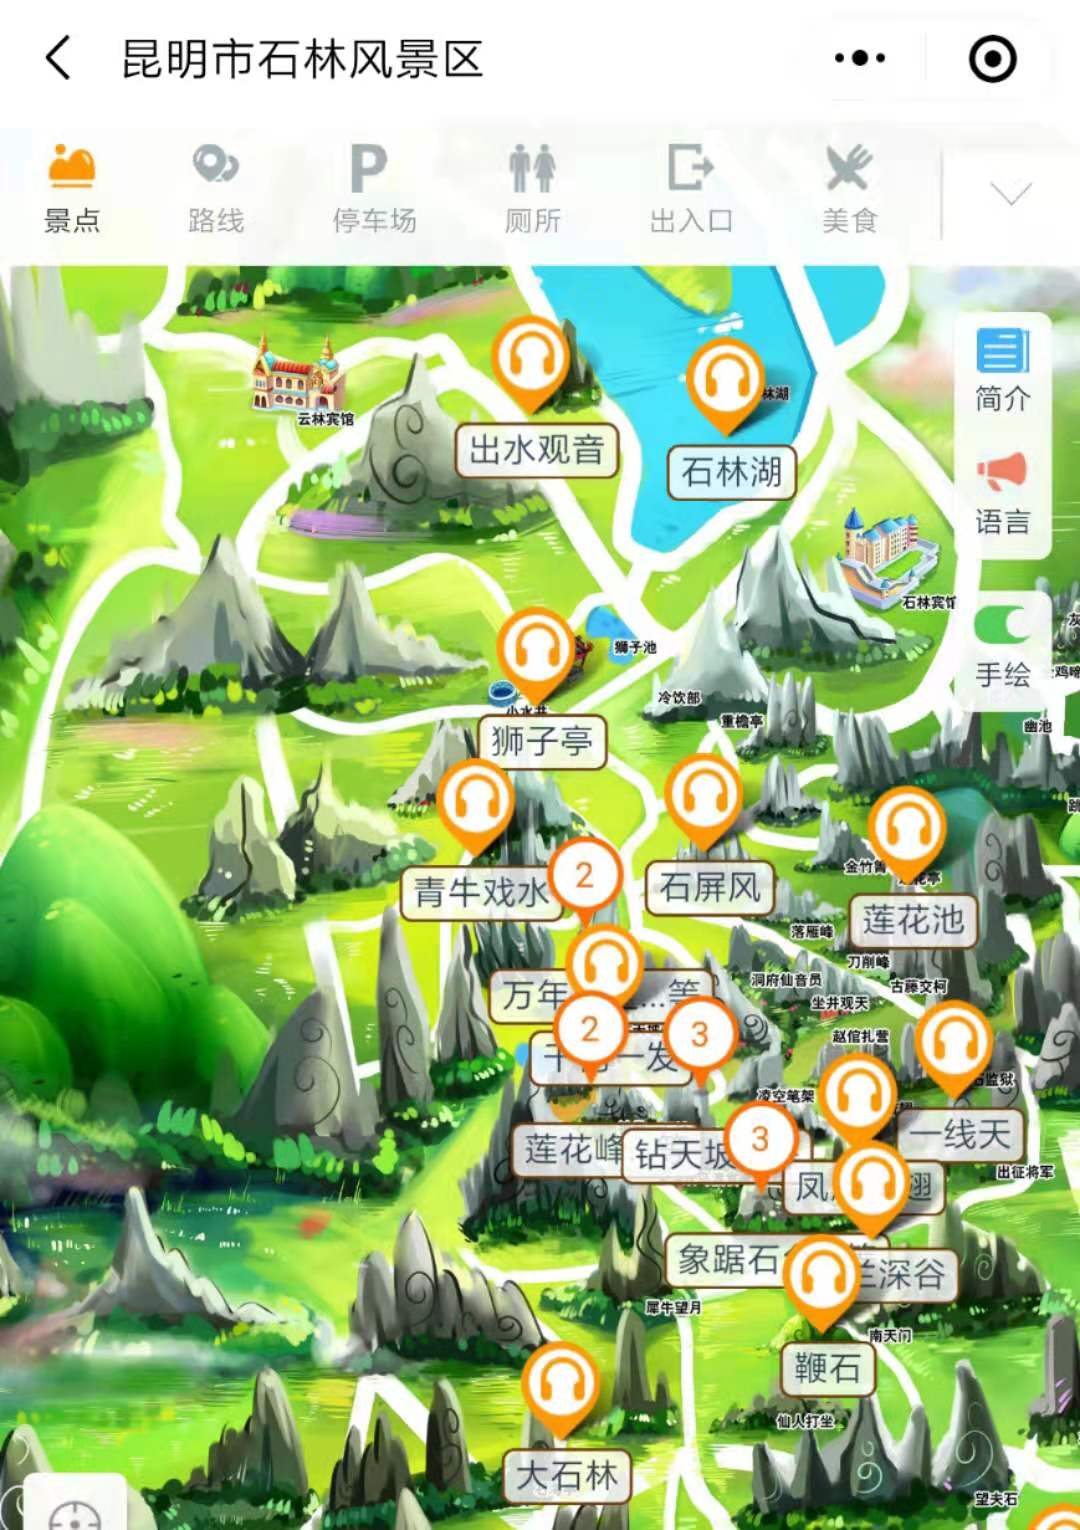 云南省昆明市旅游地图 - 昆明市地图 - 地理教师网